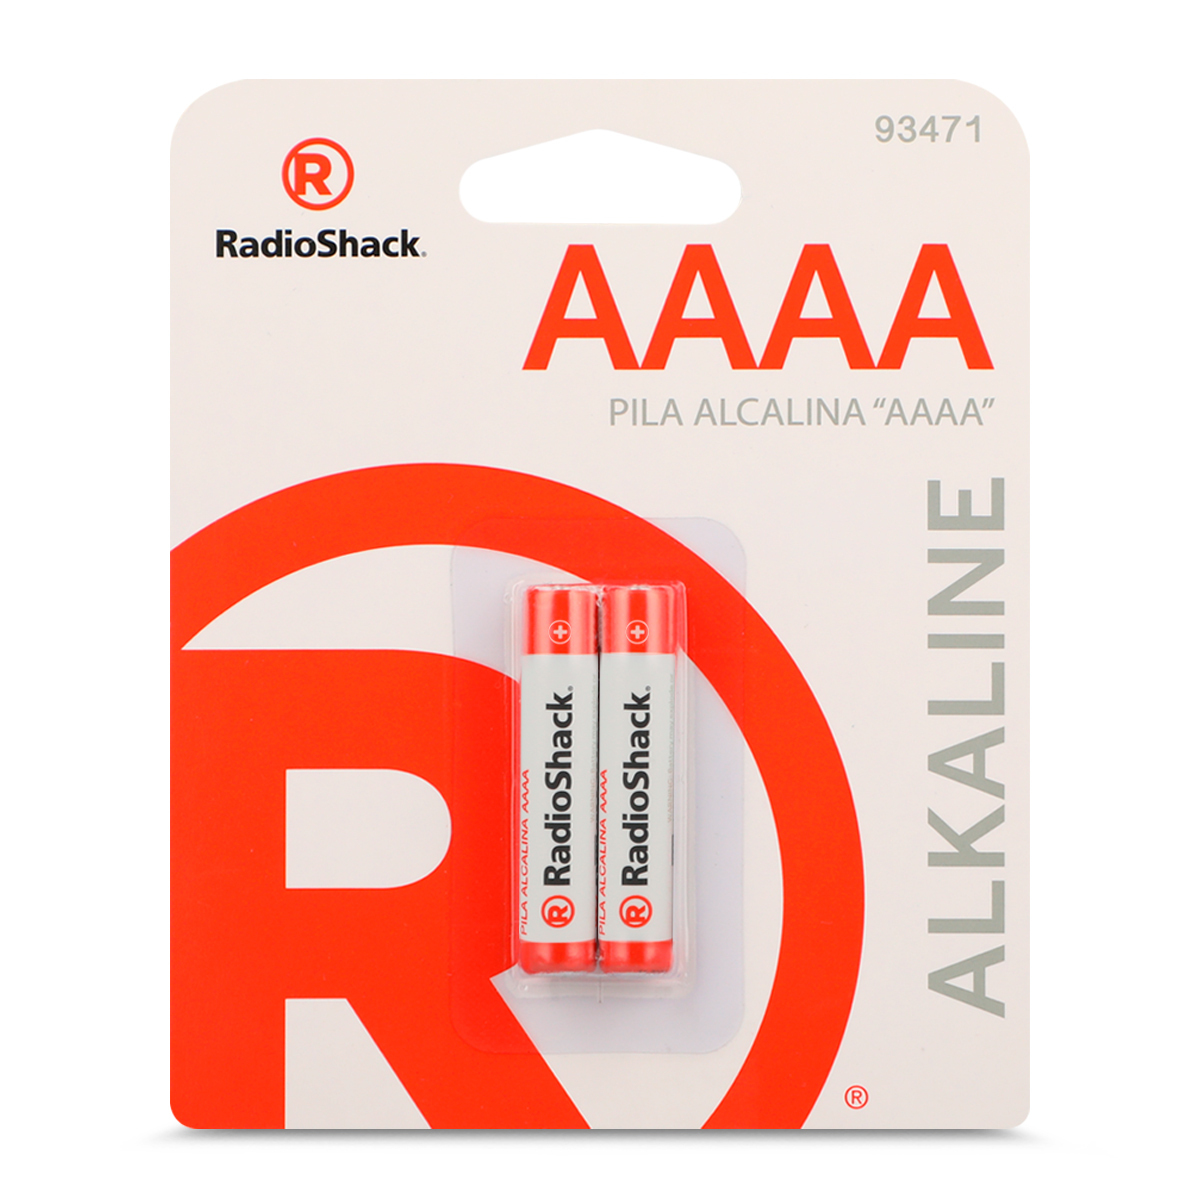 Pilas Alcalinas AAAA RadioShack 2 piezas, Pilas Alcalinas, Pilas y  Baterías, Originales RadioShack, Todas, Categoría